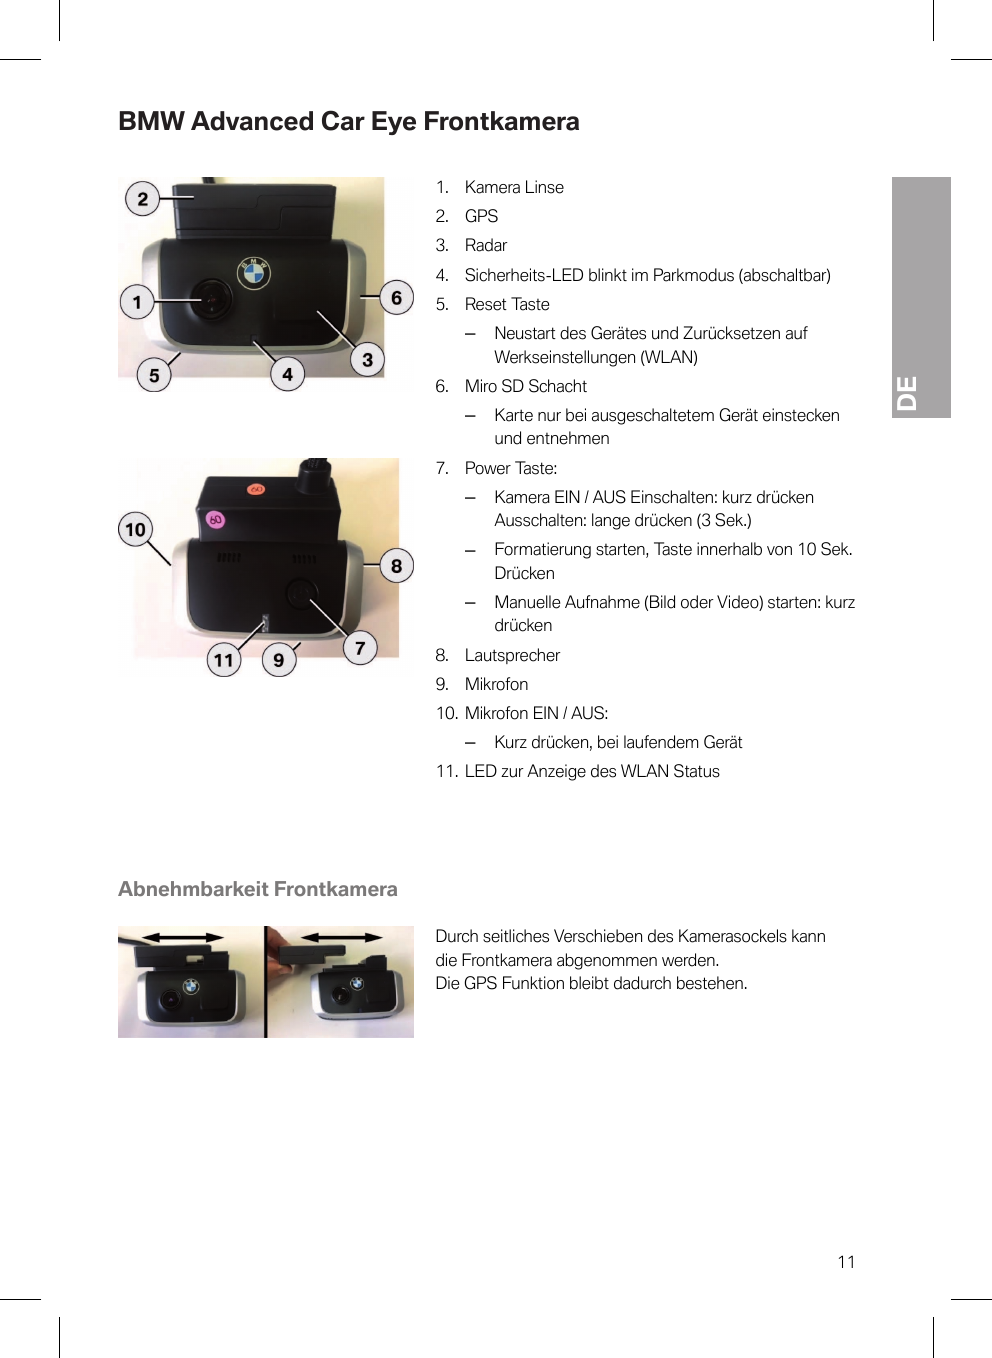 DE11BMW Advanced Car Eye Frontkamera1. Kamera Linse2. GPS3. Radar4. Sicherheits-LED blinkt im Parkmodus (abschaltbar)5. Reset Taste–Neustart des Gerätes und Zurücksetzen aufWerkseinstellungen (WLAN)6. Miro SD Schacht–Karte nur bei ausgeschaltetem Gerät einsteckenund entnehmen7. Power Taste:–Kamera EIN / AUS Einschalten: kurz drückenAusschalten: lange drücken (3 Sek.)–Formatierung starten, Taste innerhalb von 10 Sek.Drücken–Manuelle Aufnahme (Bild oder Video) starten: kurzdrücken8. Lautsprecher9. Mikrofon10. Mikrofon EIN / AUS:–Kurz drücken, bei laufendem Gerät11. LED zur Anzeige des WLAN StatusAbnehmbarkeit FrontkameraDurch seitliches Verschieben des Kamerasockels kanndie Frontkamera abgenommen werden.Die GPS Funktion bleibt dadurch bestehen.